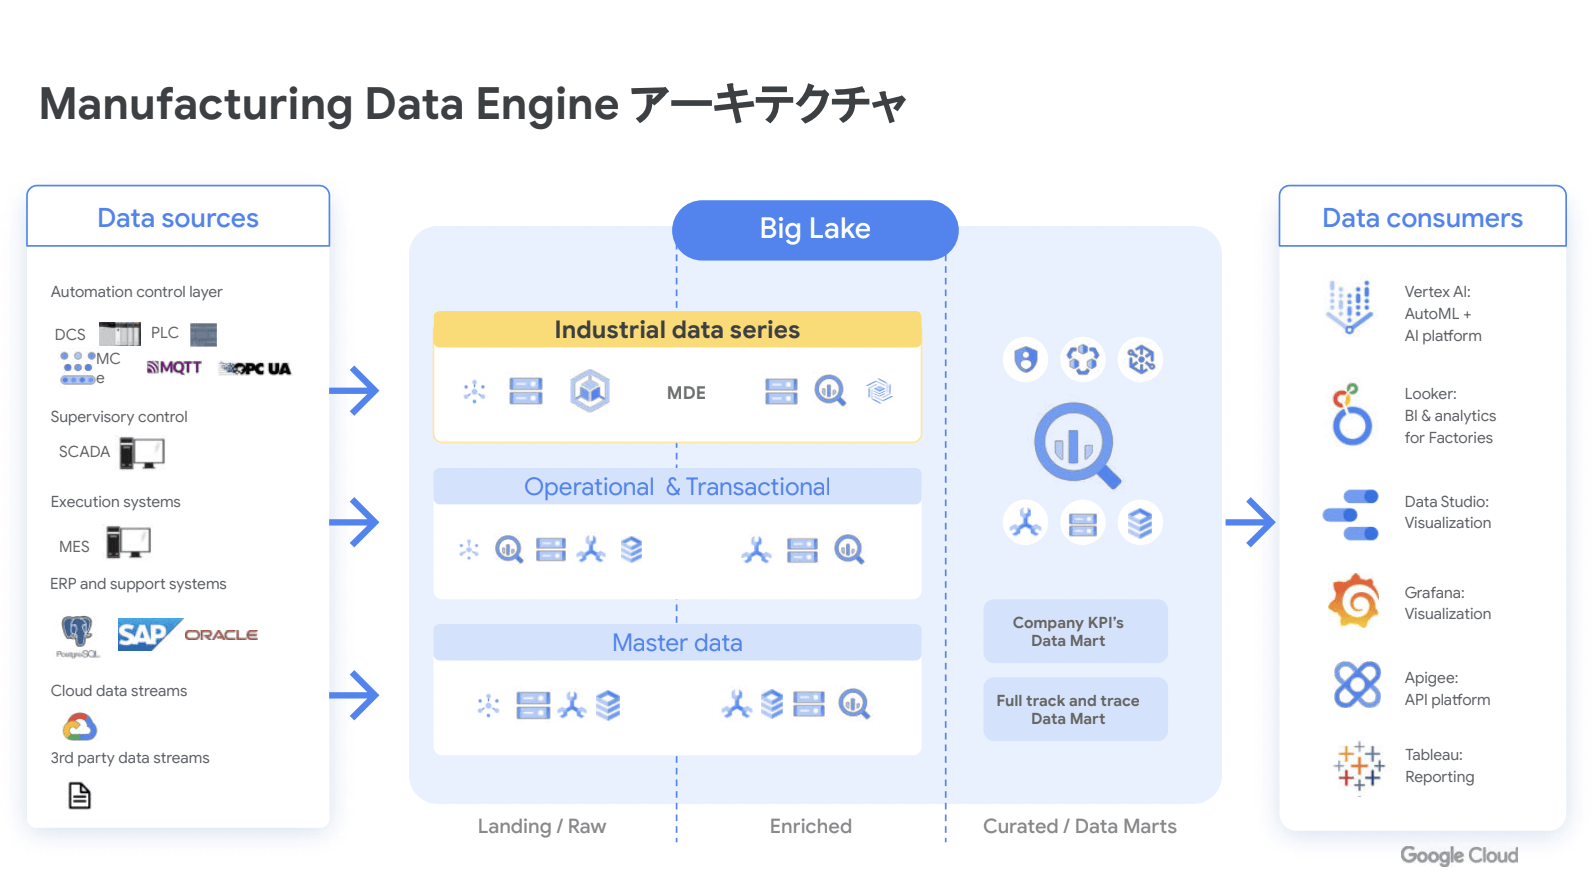 「Manufacturing Data Engine」の構成要素で、データの流れを表した図